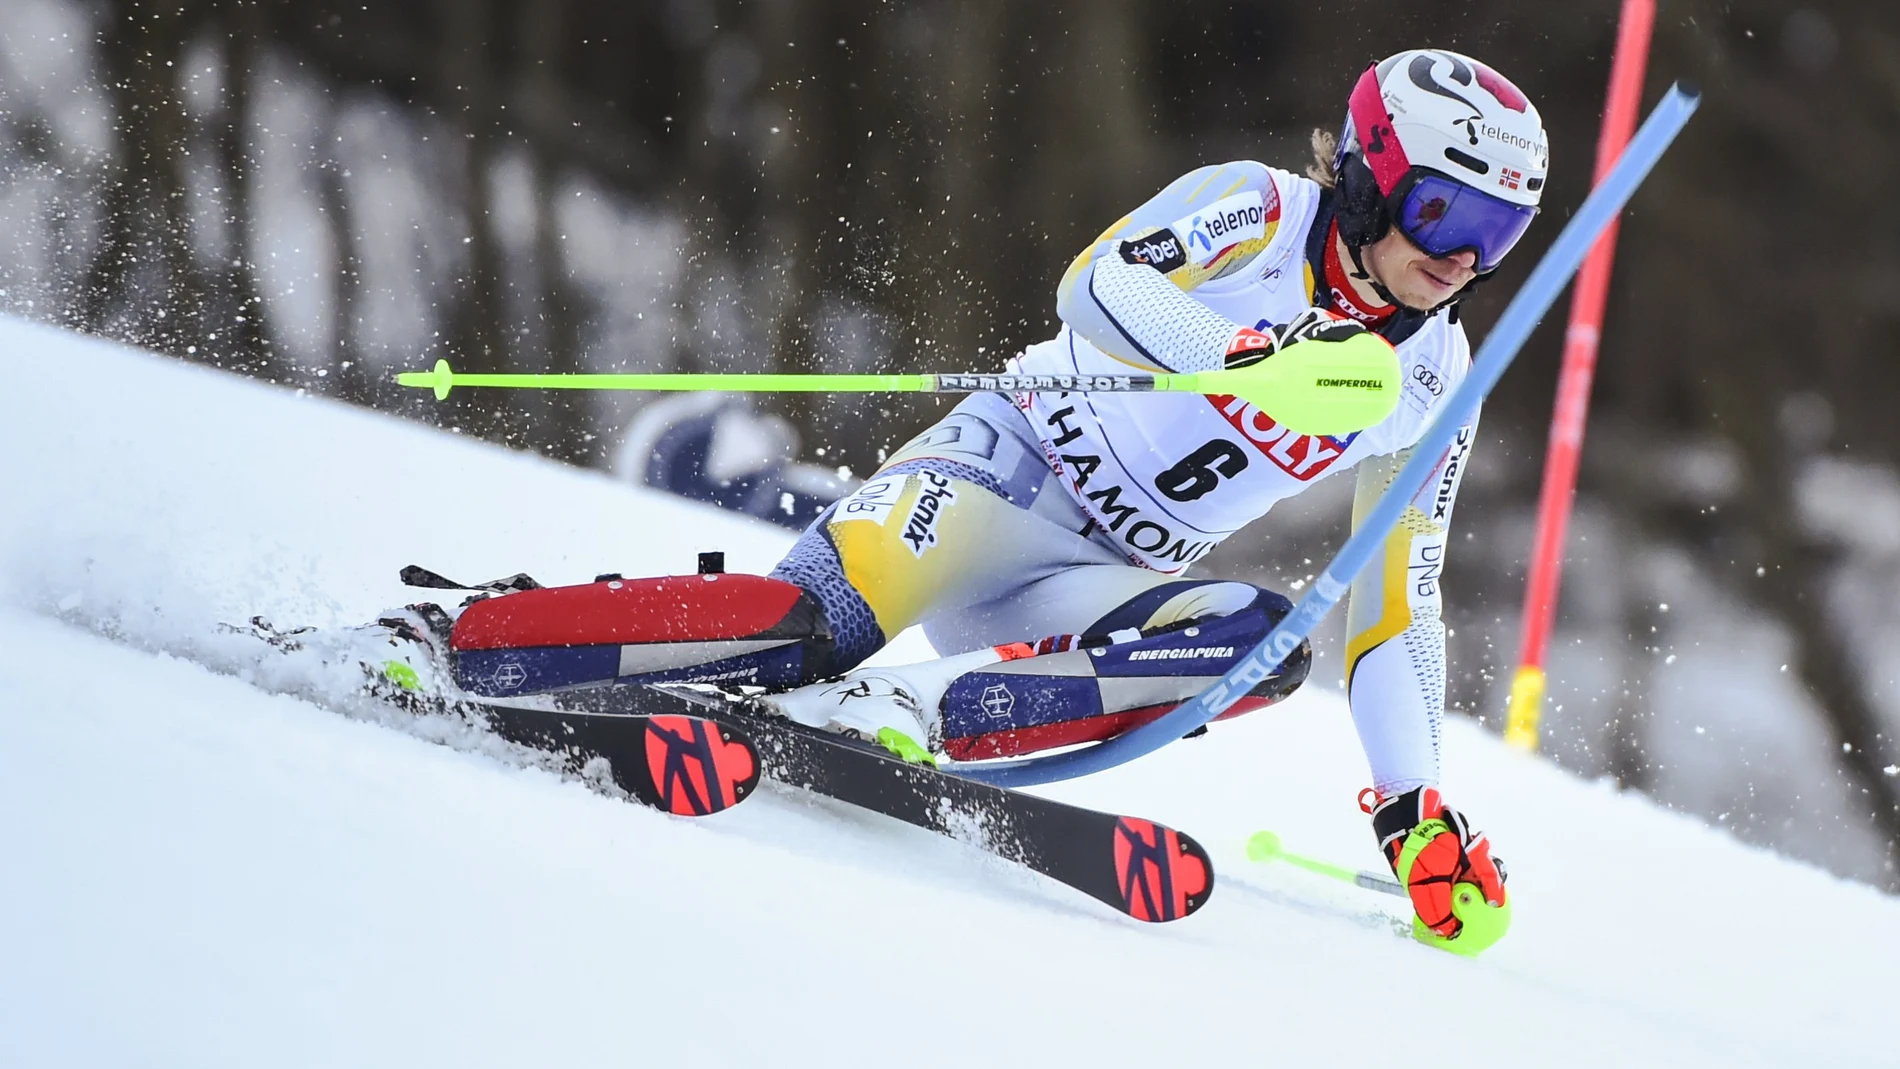 El noruego Henrik Kristoffersen baja a toda velocidad durante un eslalon de la Copa del Mundo de esquí alpino, en Chamonix, el domingo 31 de enero de 2021. (AP Photo/Marco Tacca)